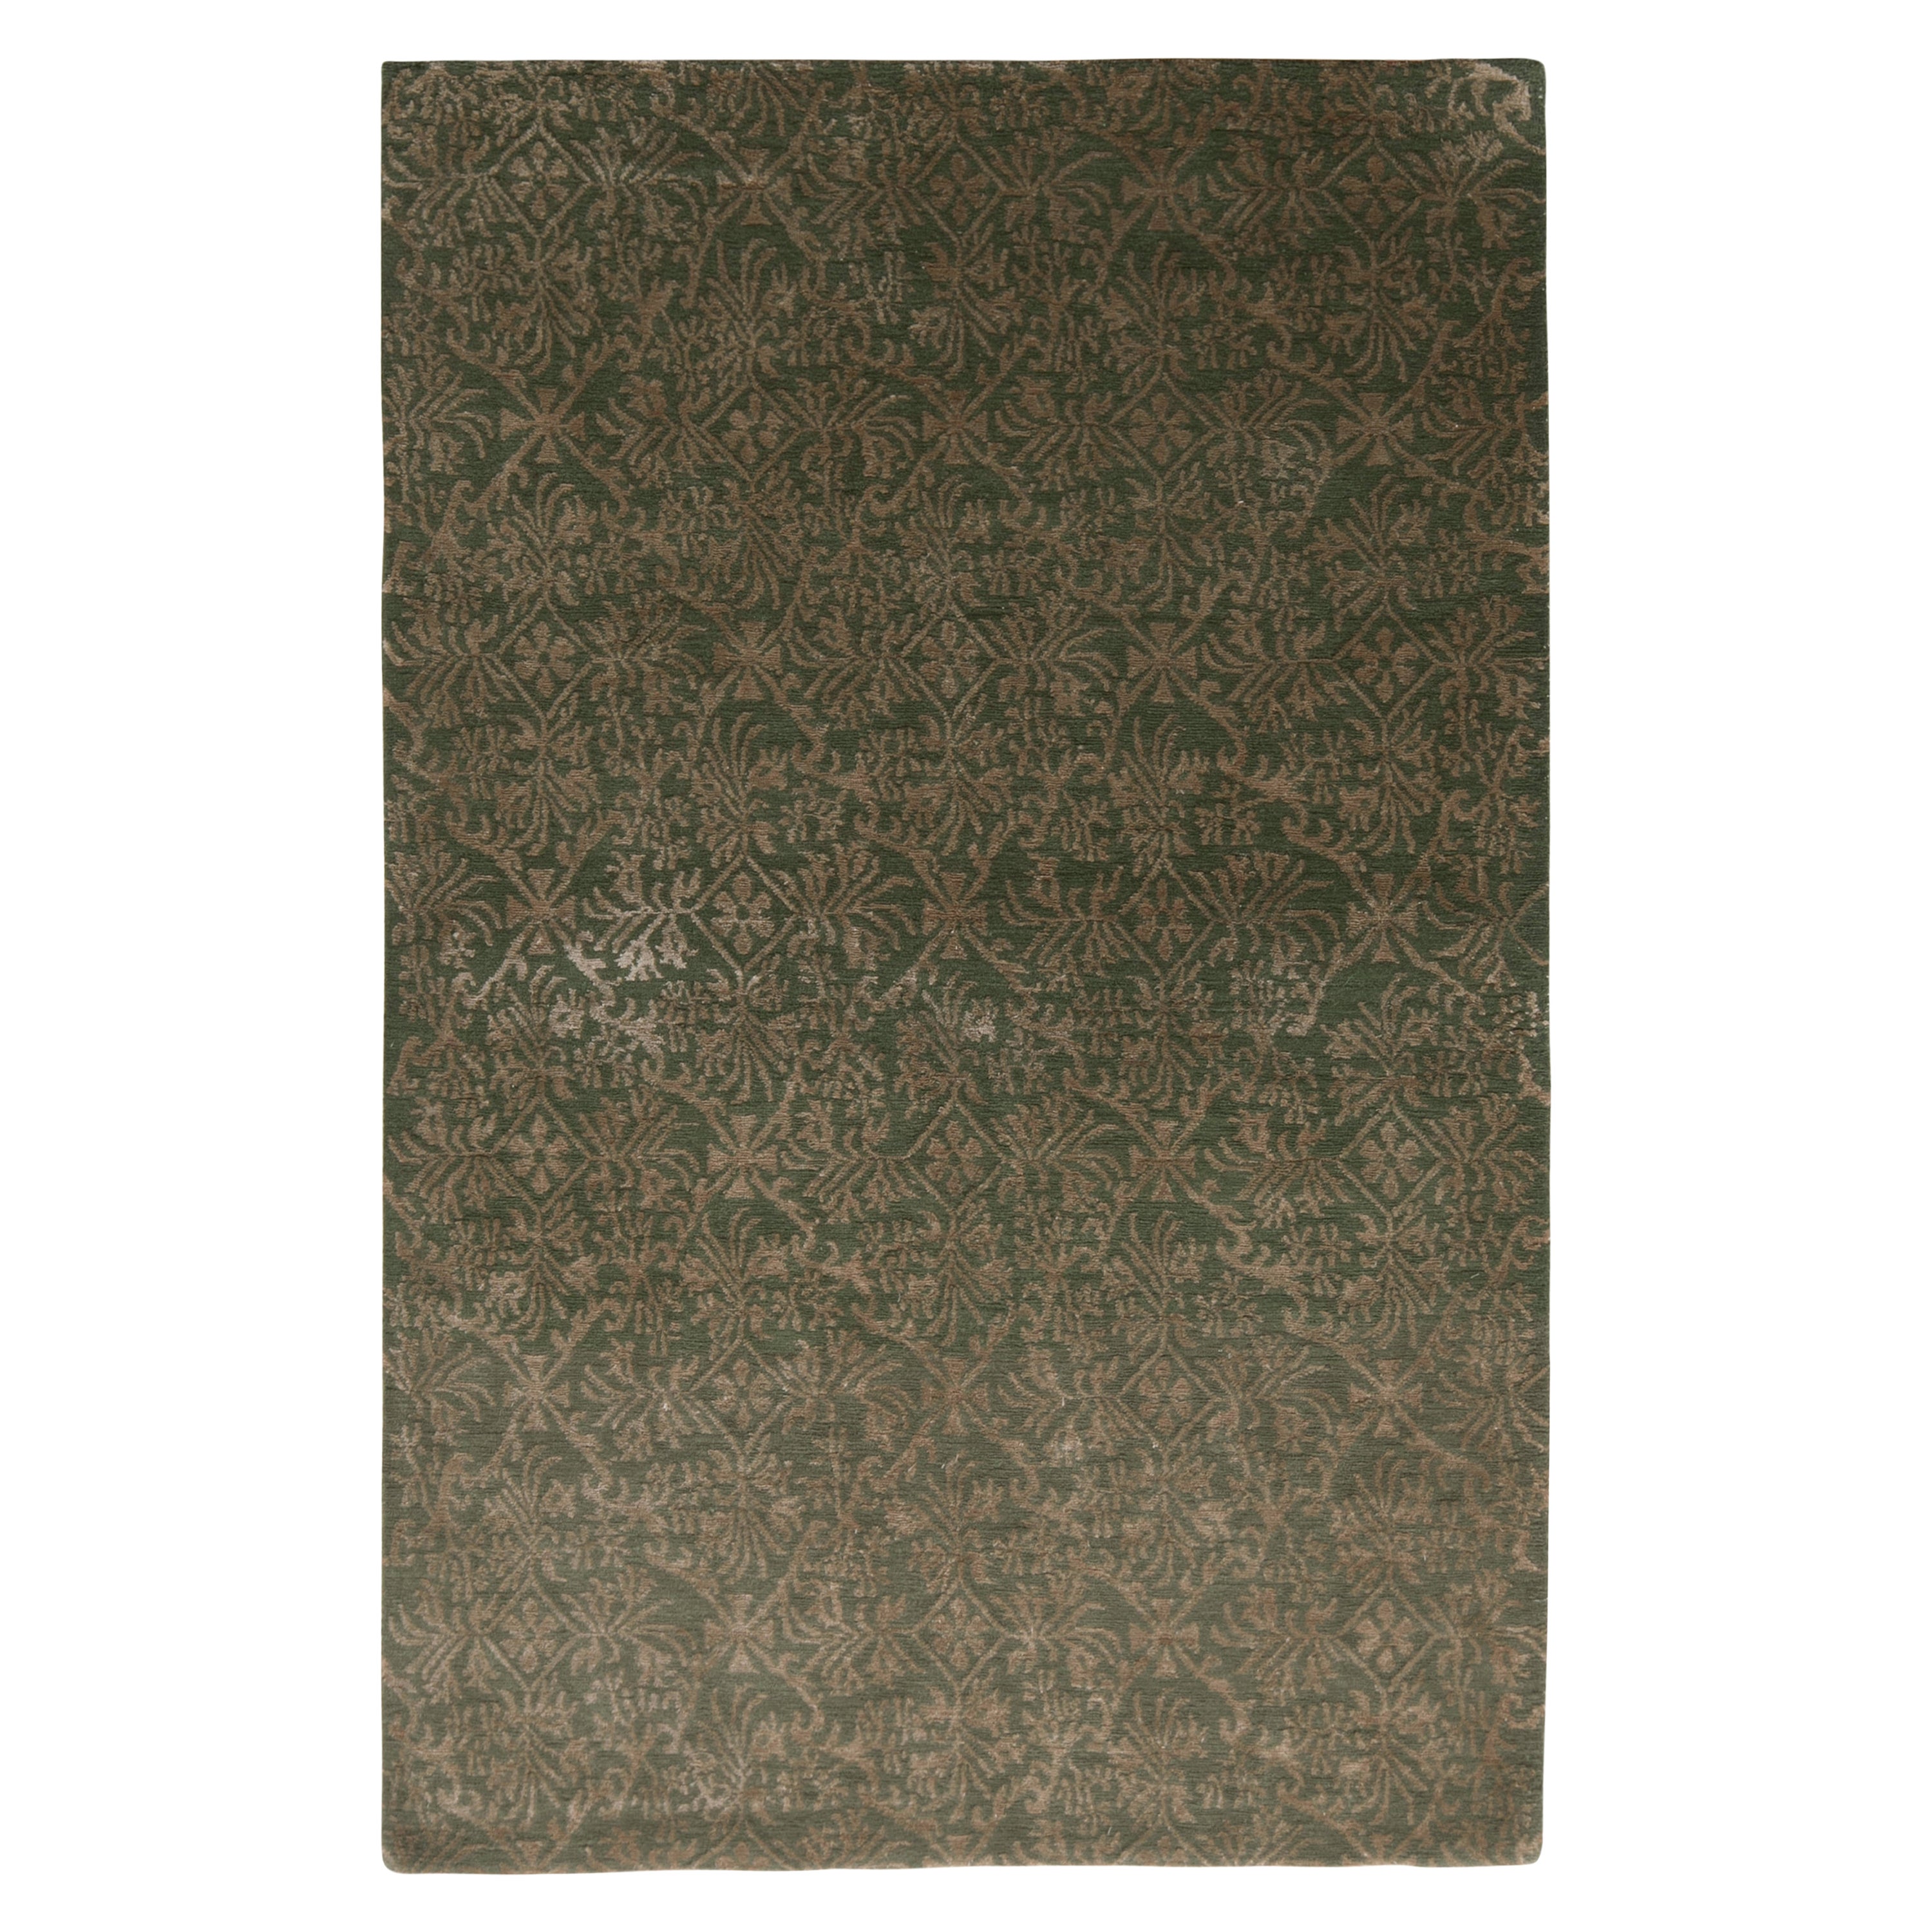 Handgeknüpfter Teppich & Kelim-Teppich im europäischen Stil mit Beige-Braun-Grün-Blumenmuster